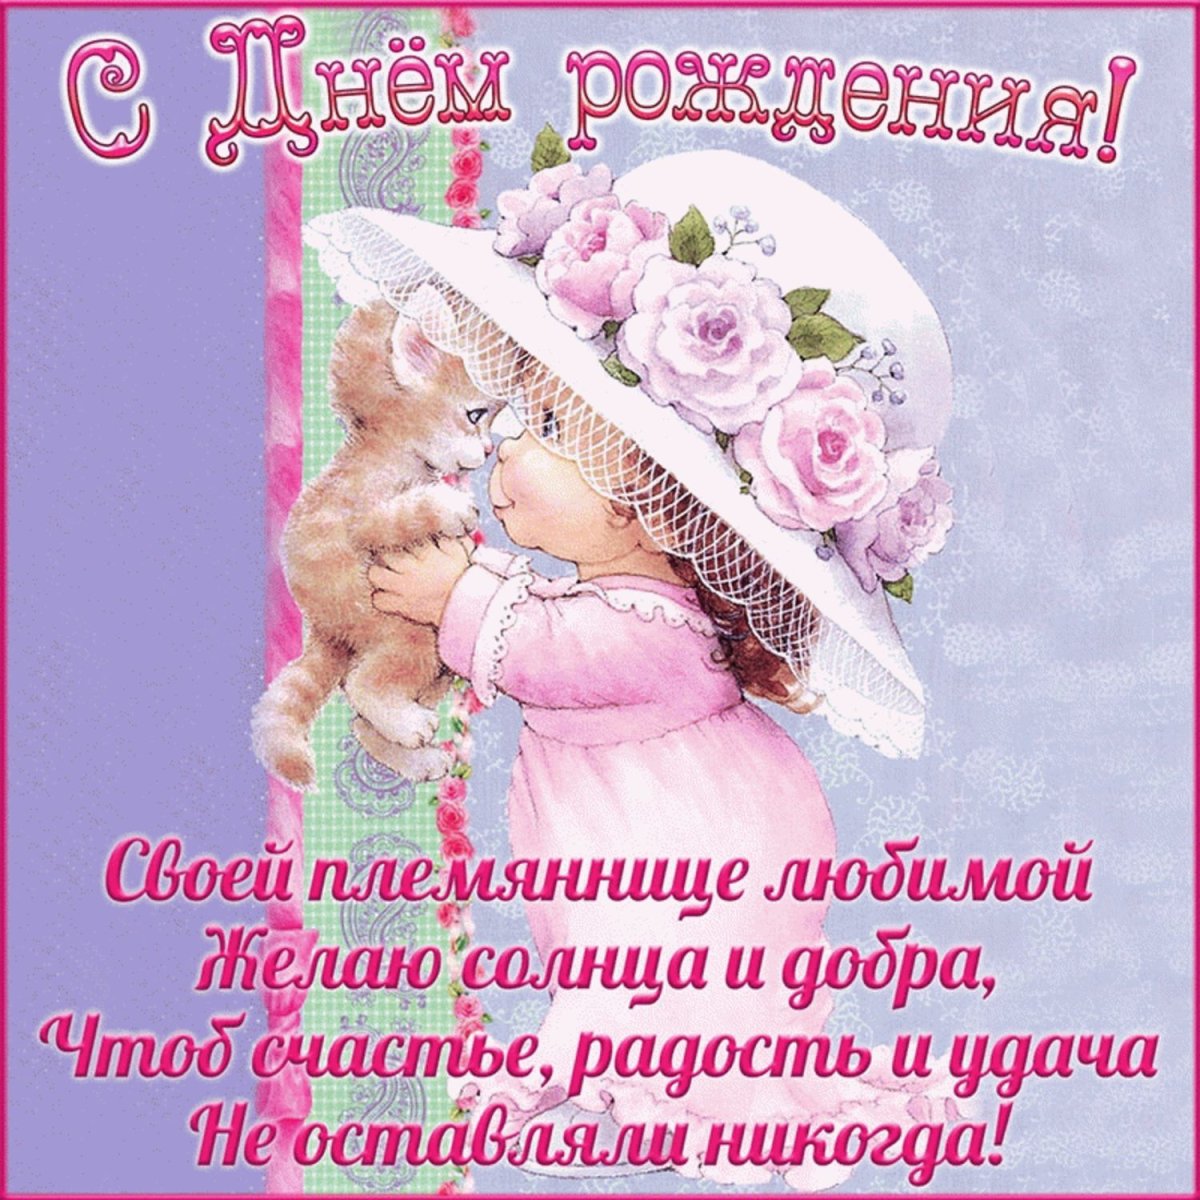 Путин передает поздравления для внучки!